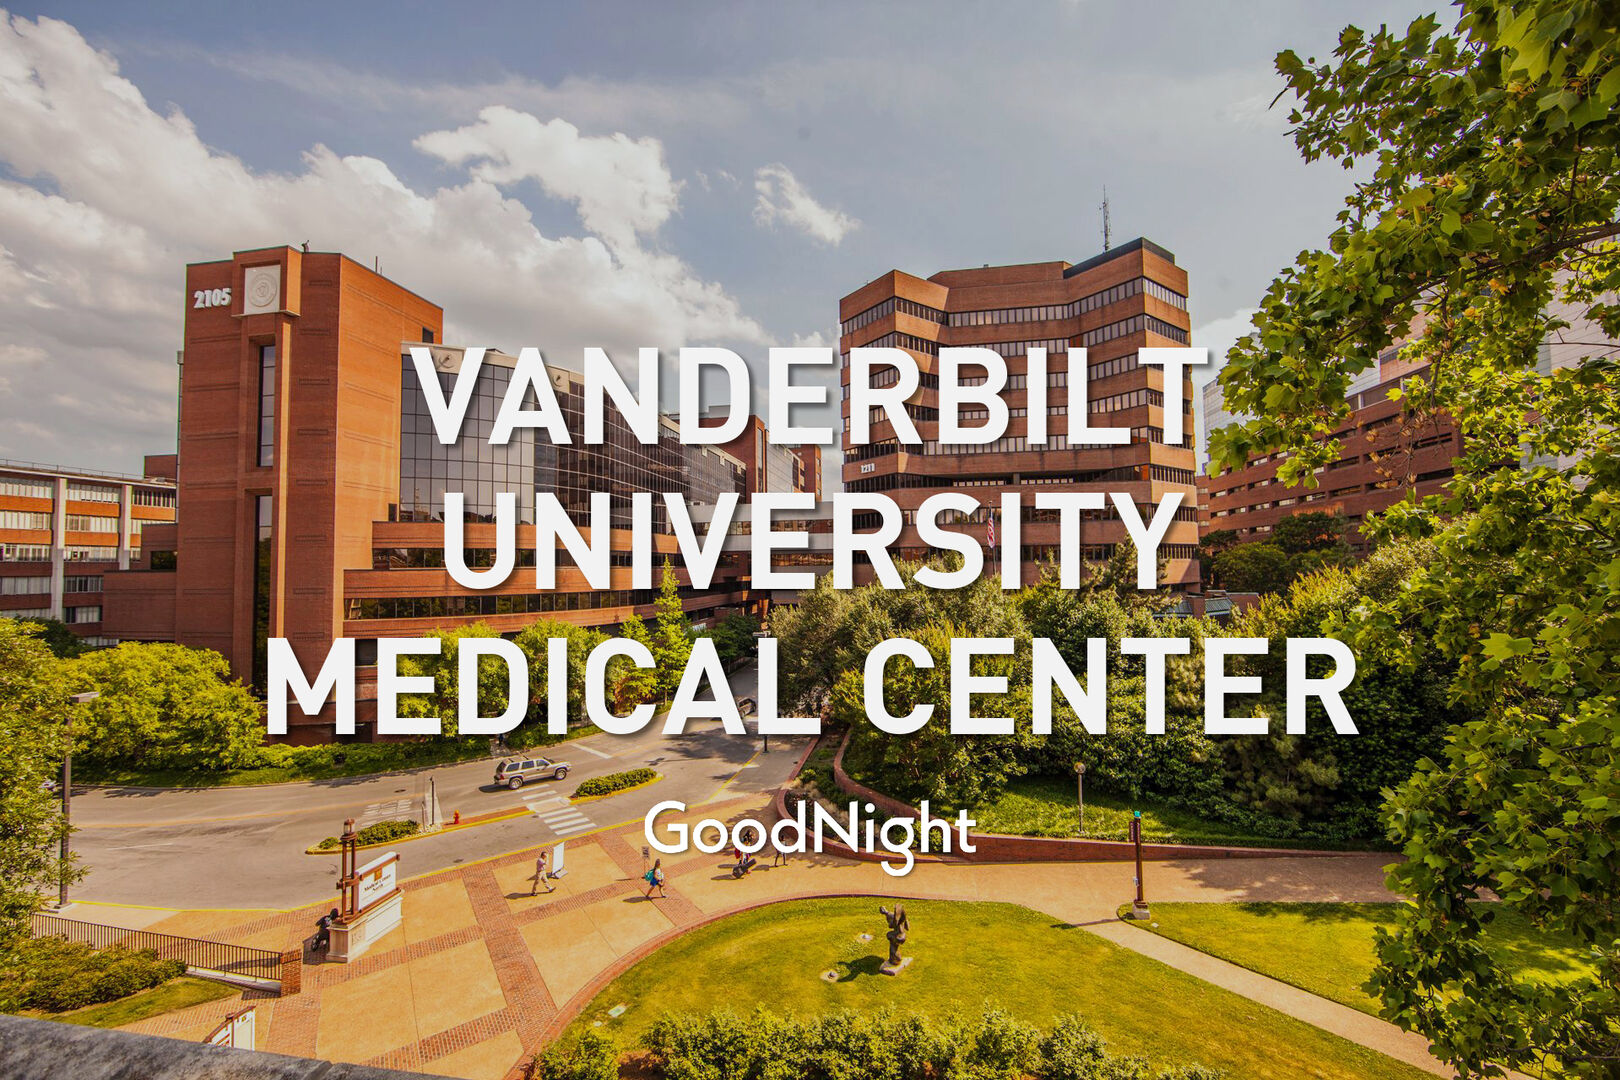 4 mins: Vanderbilt University Medical Center